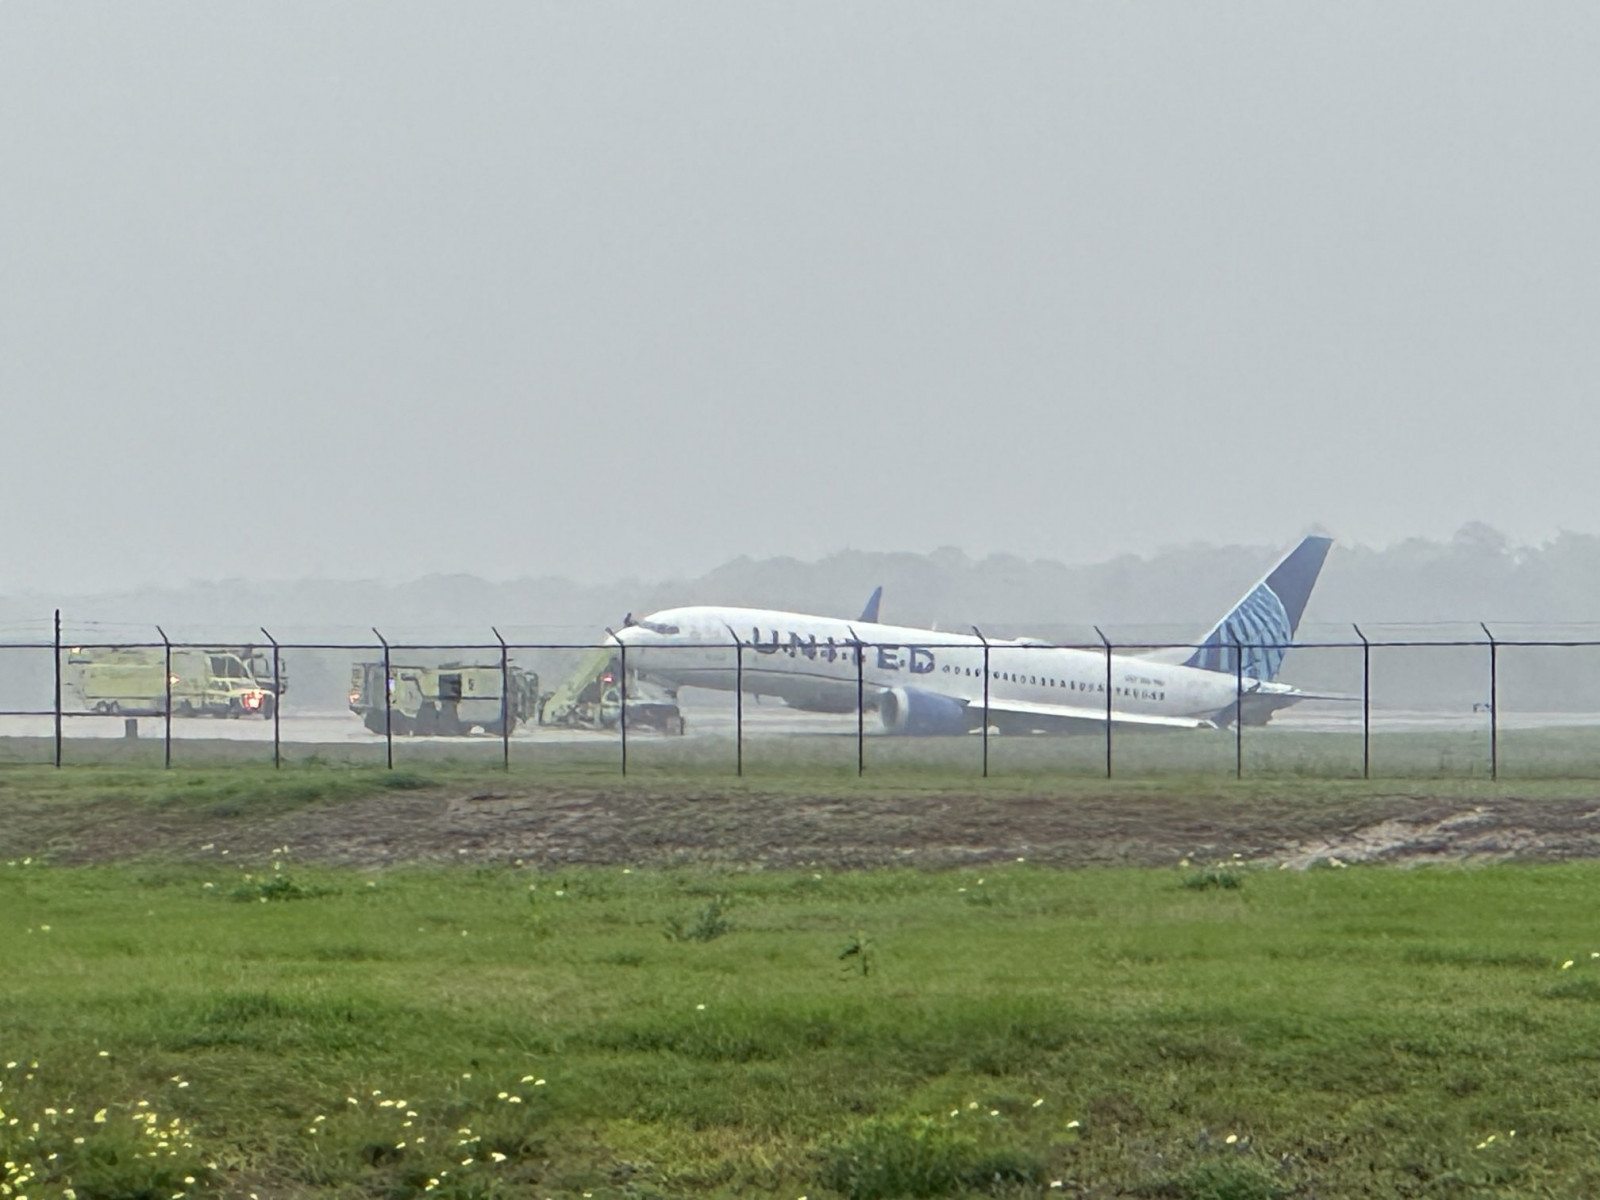 ВИДЕО: “United Airlines” компаний онгоц газардах үедээ гулсаж, зогсоолын хэсгээс гарчээ